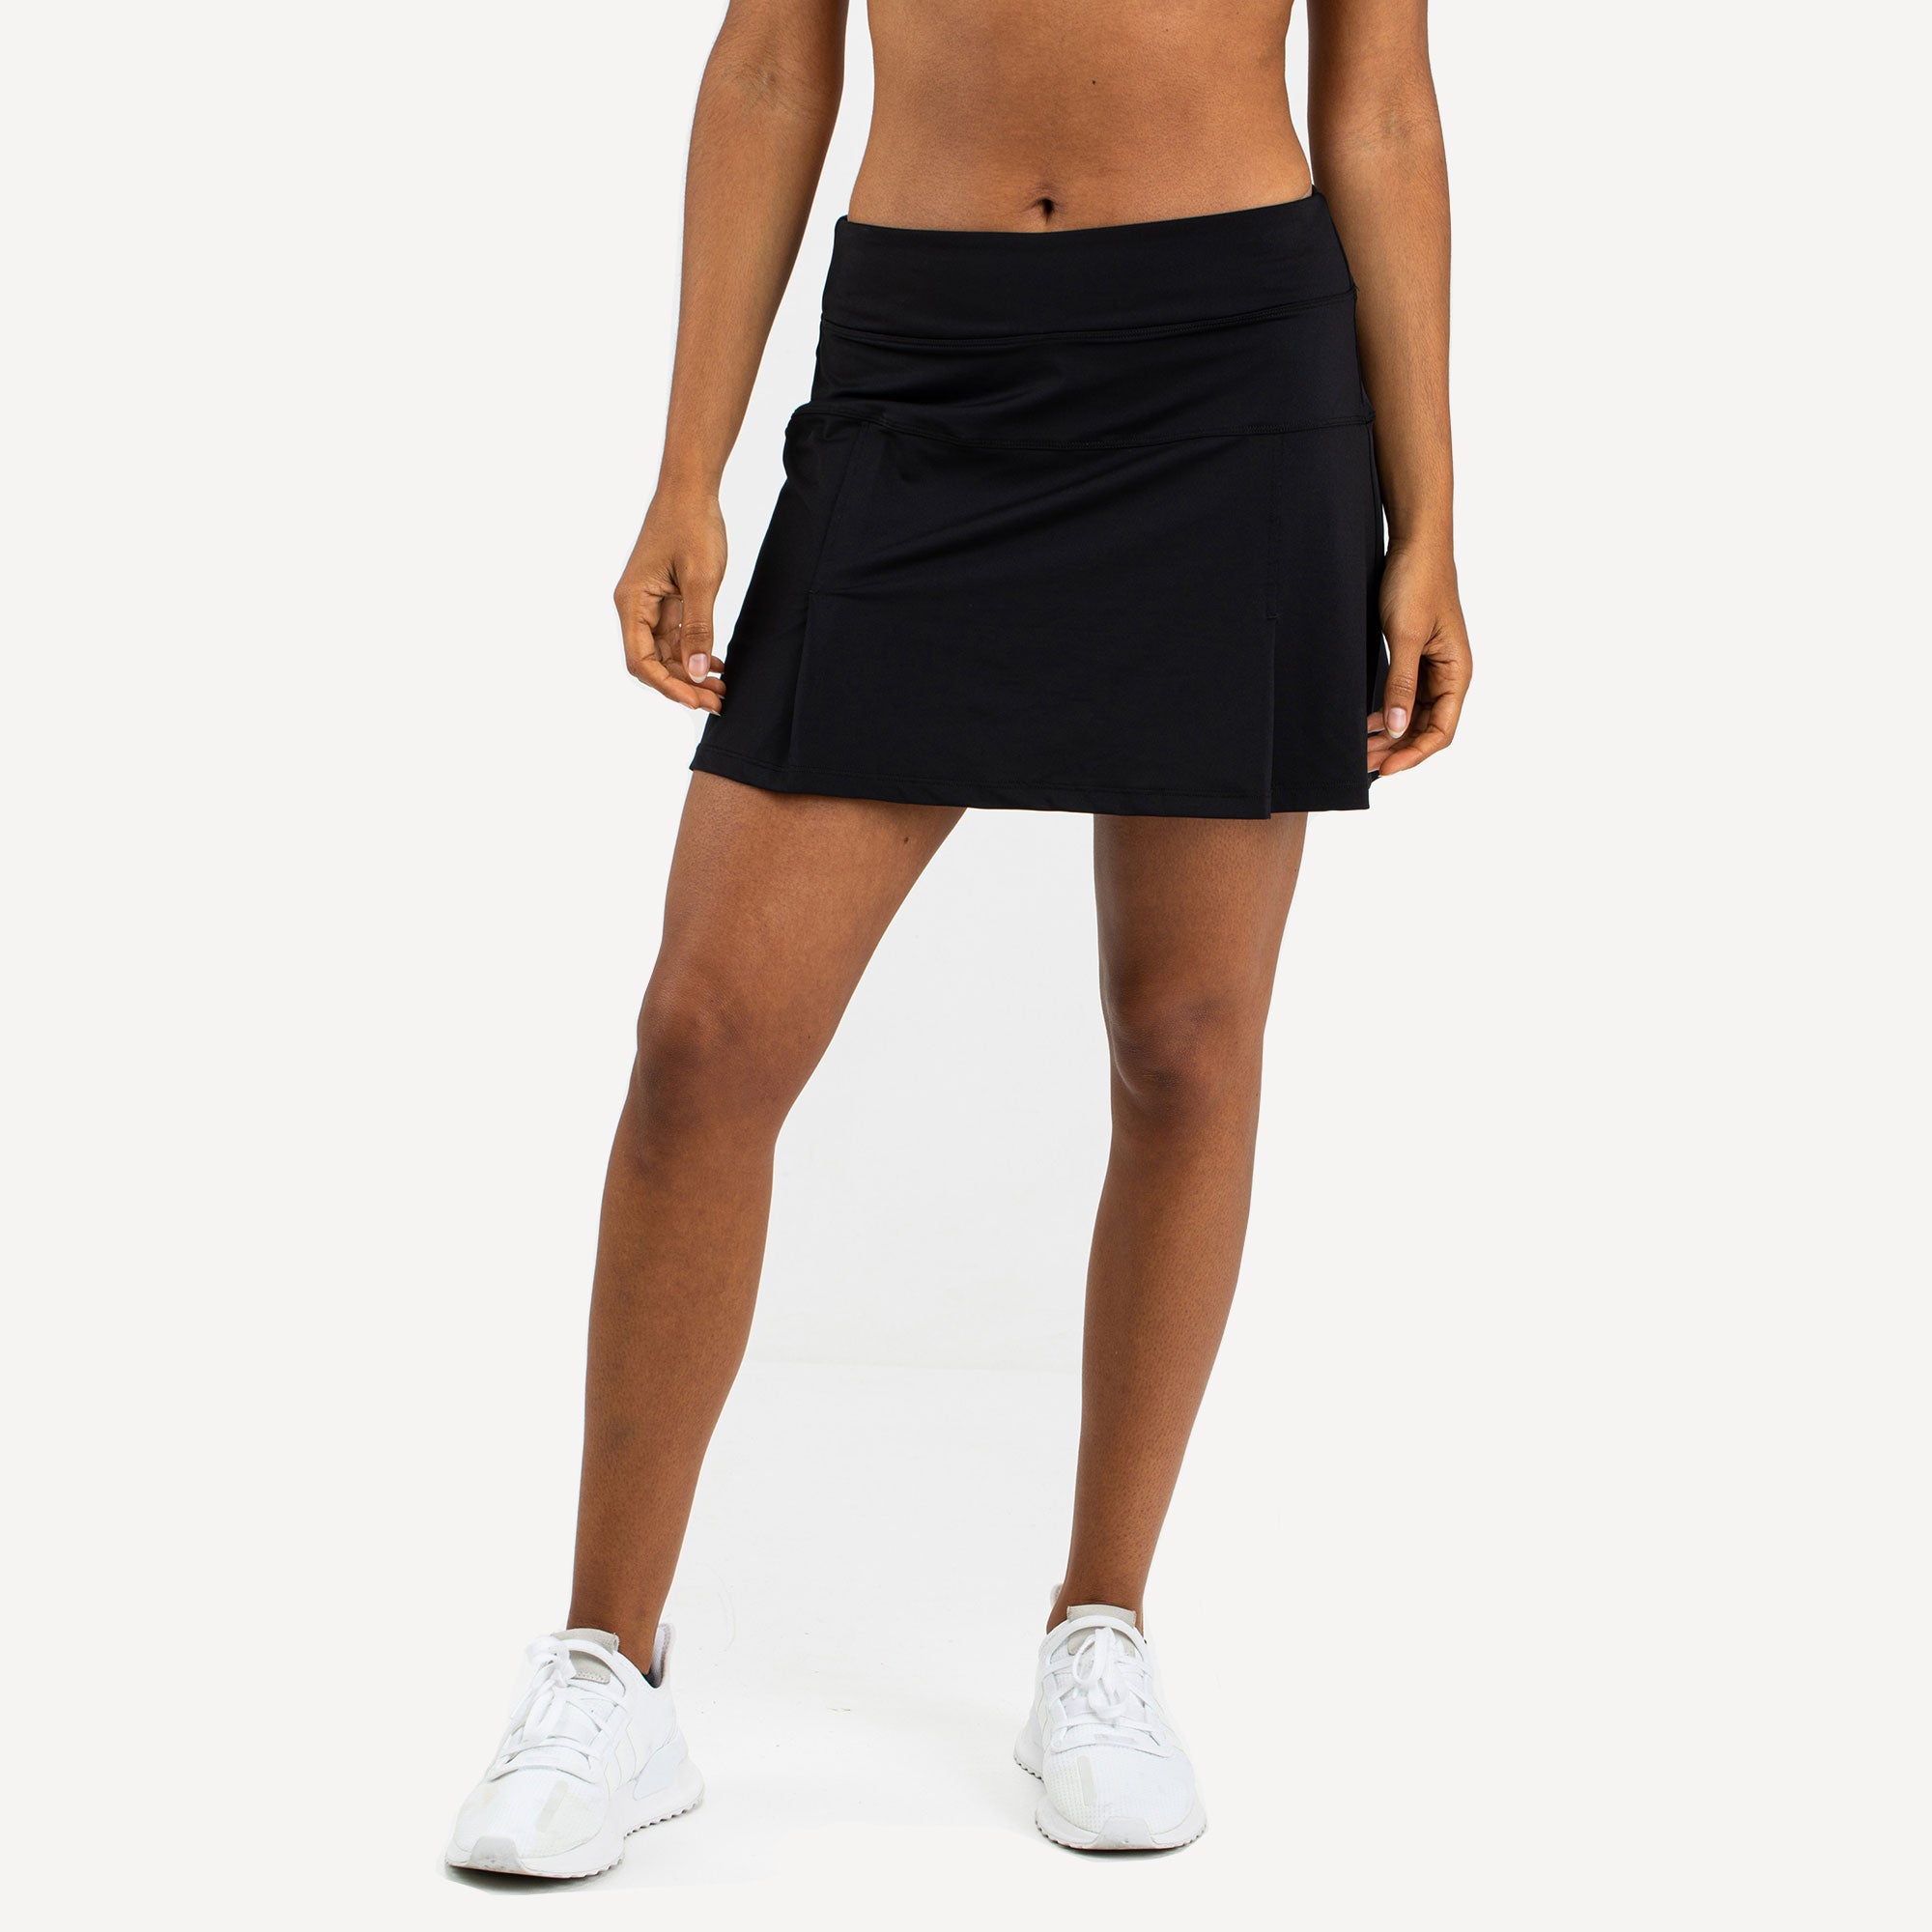 Sjeng Sports Monica Women's Tennis Skirt Black (1)